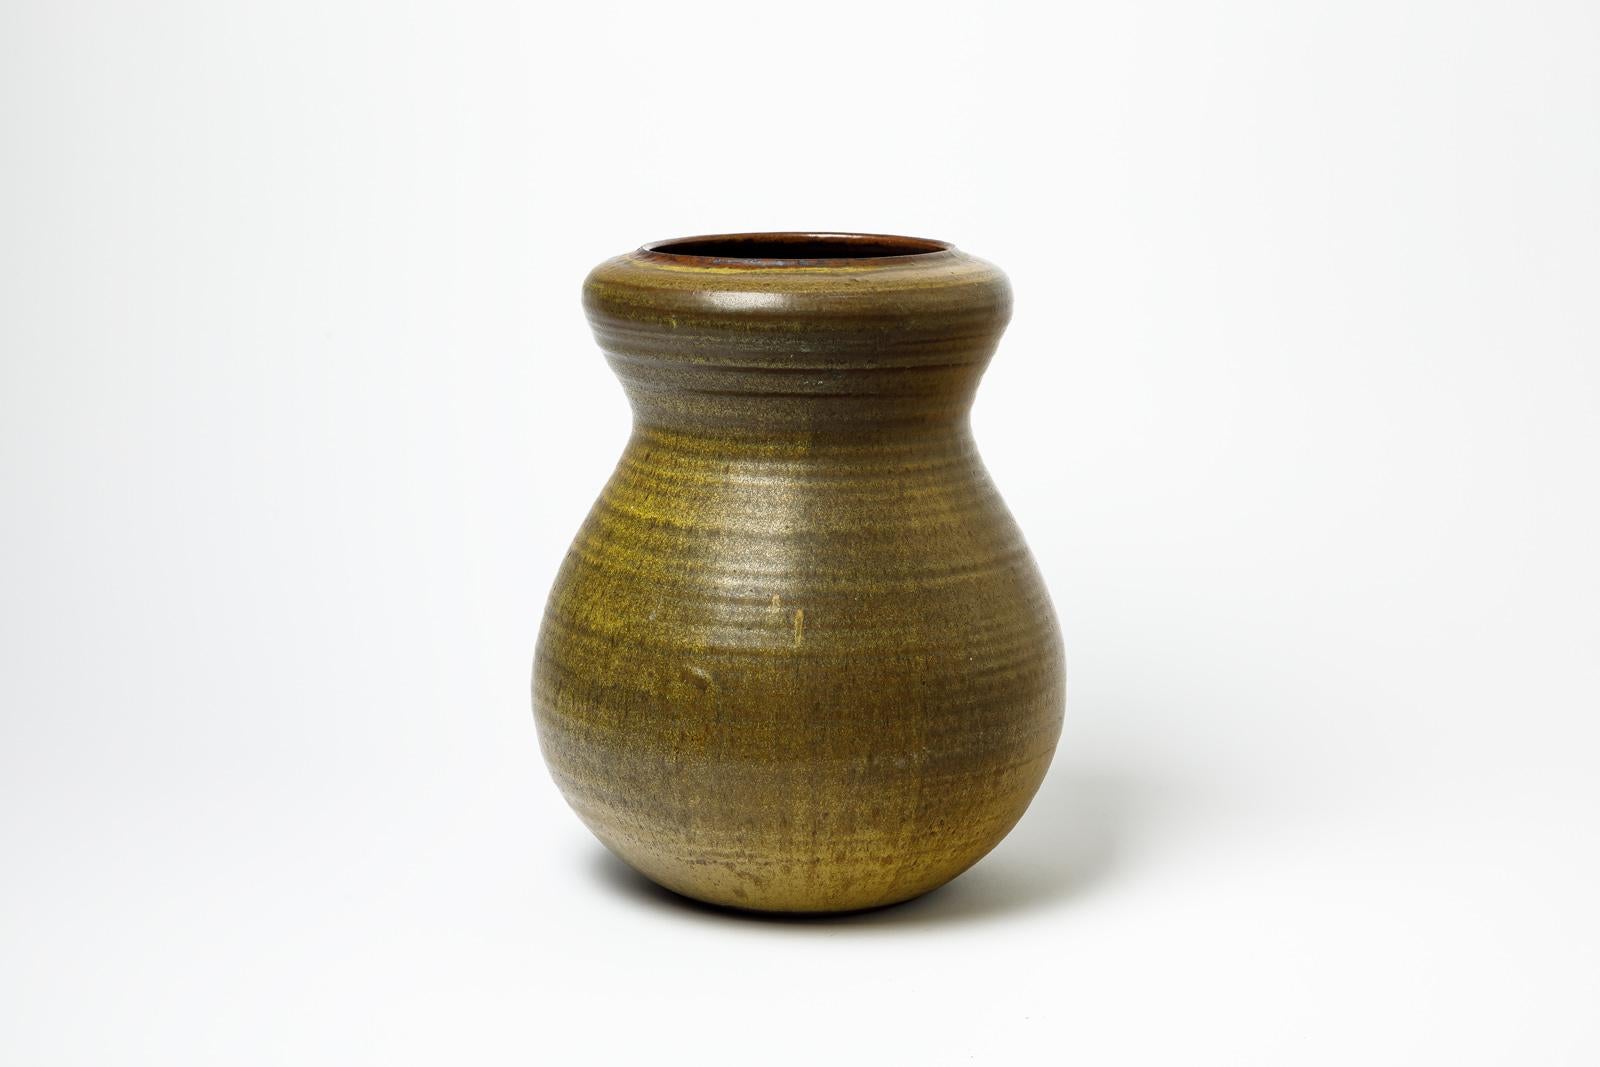 Vase aus dunkelgrün und braun glasiertem Steingut von Daniel de Montmollin.
Künstlersignatur unter dem Sockel. 
Etwa 1990-2000.
H : 13,4' x 9,4' Zoll.